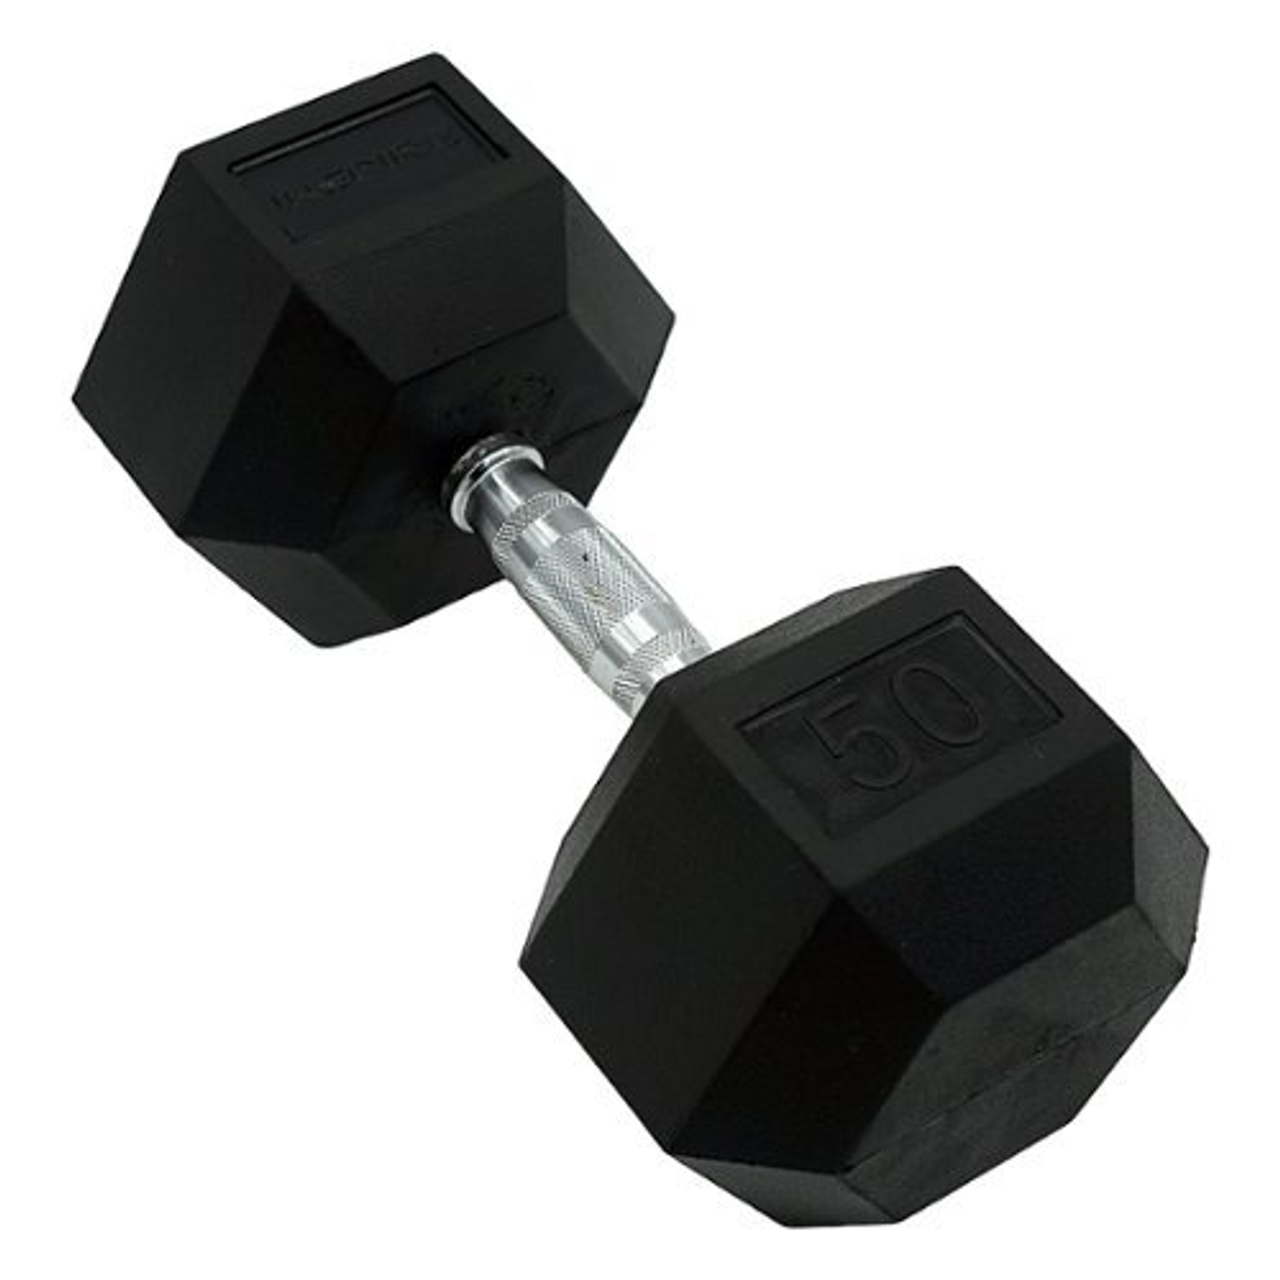 Inspire Fitness 50LB Rubber Dumbbell - Black